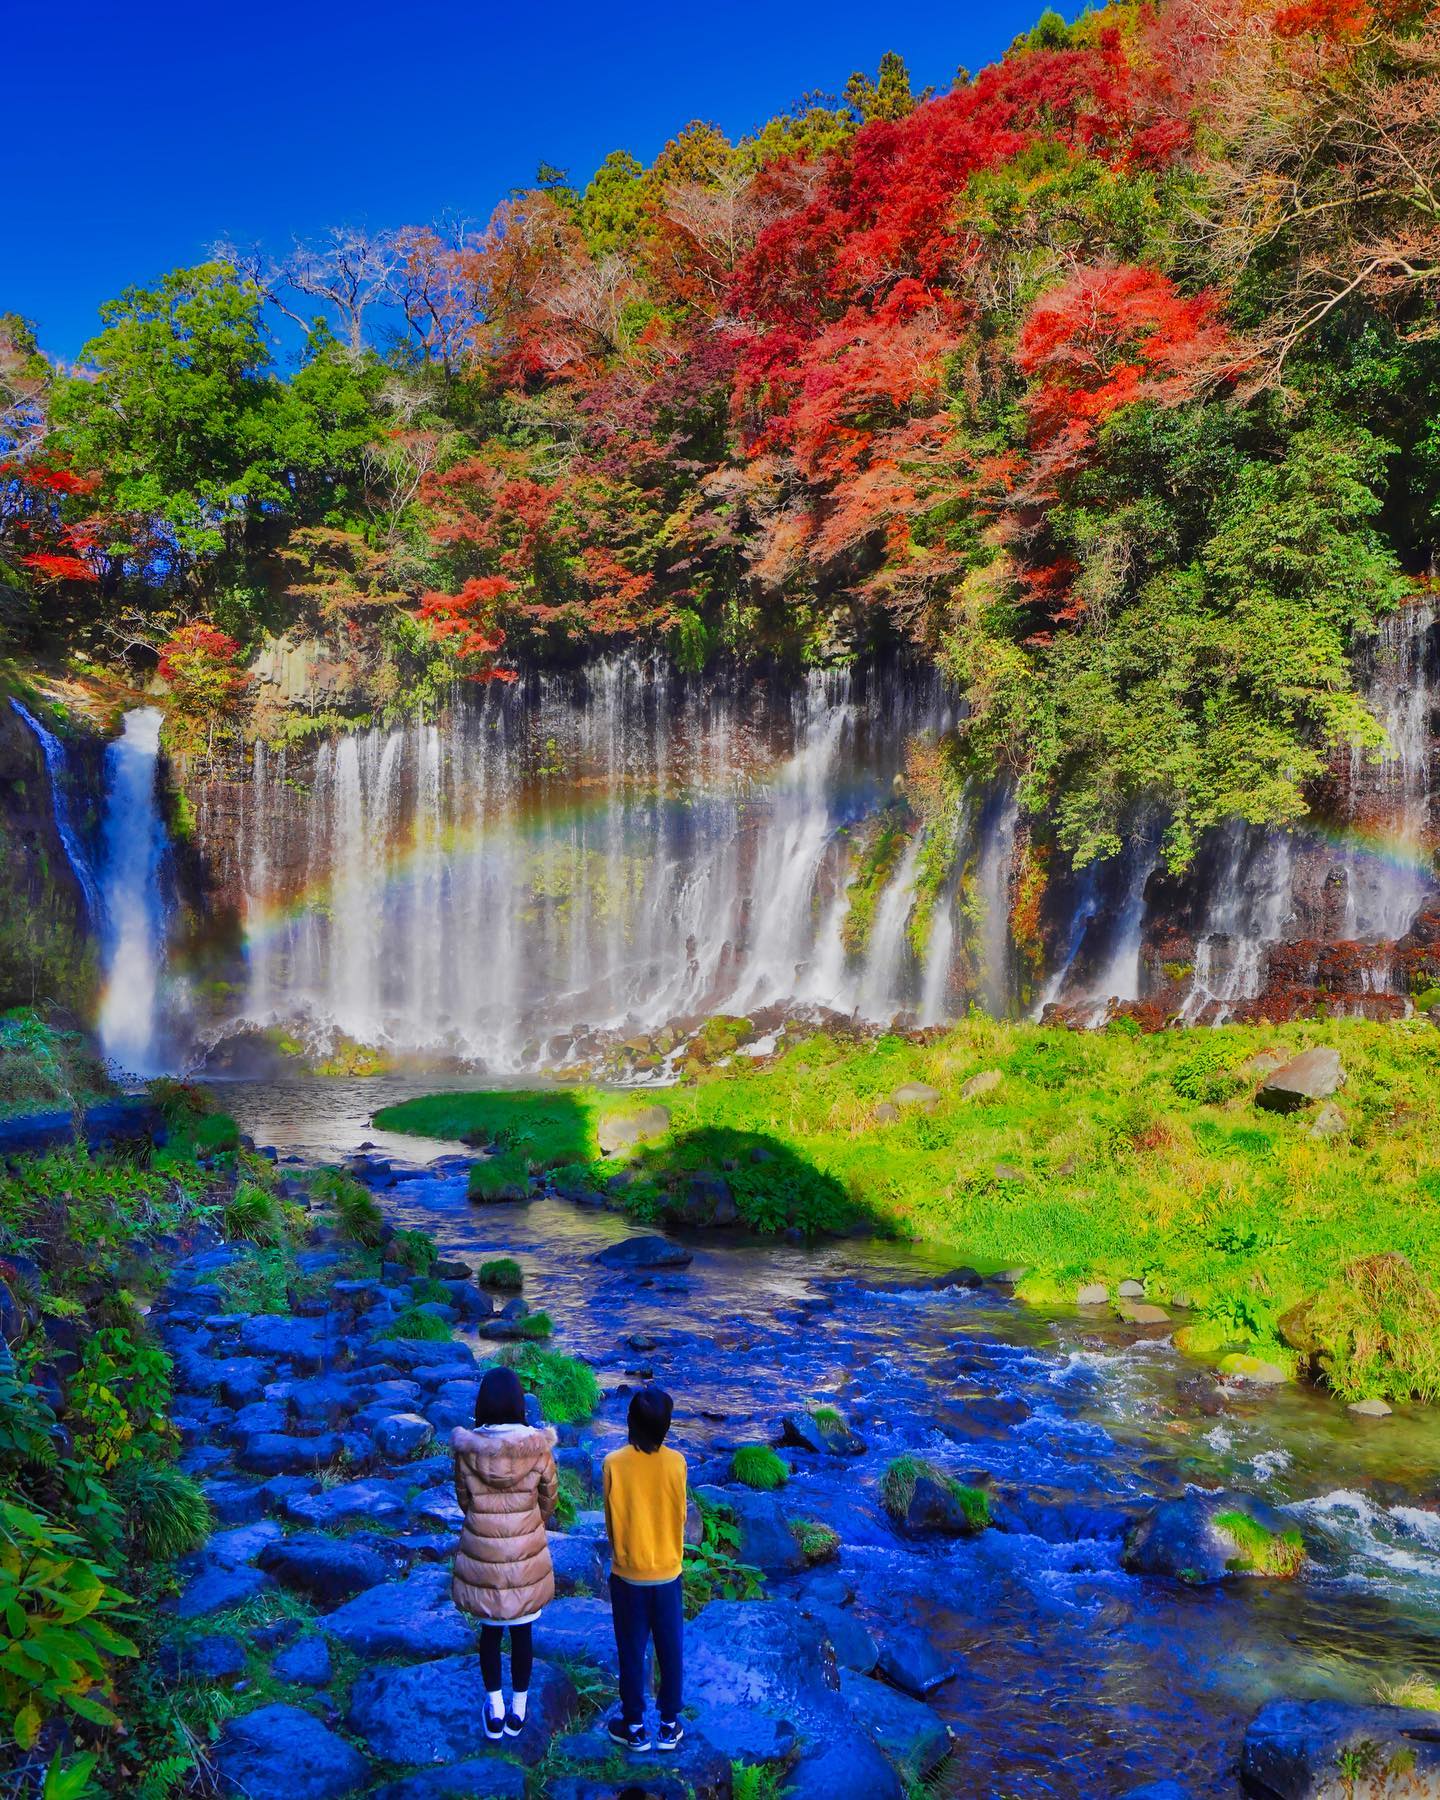 🇯🇵 【靜岡 Shizuoka】白絲瀑布
🌊 獲選為日本「觀光百選瀑布」第一名的白絲瀑布「白糸の滝」位於靜岡線的富士宮市
🍁 秋天伴隨紅黃深綠色彩，是靜岡著名紅葉名所，水氣折射形成的彩虹更增添浪漫氛圍
❤️ 水源主要來自富士山的天然湧水從 20 米高墜下的白絲瀑布，數百條的水流又薄又細緻，宛如絲緞一樣因而得名

#japantravel #shizuoka #靜岡 #富士宮 #karuizawashiraitofalls #白糸の滝 #白絲瀑布 #把世界當教室🌍 #travelwithmikeanna